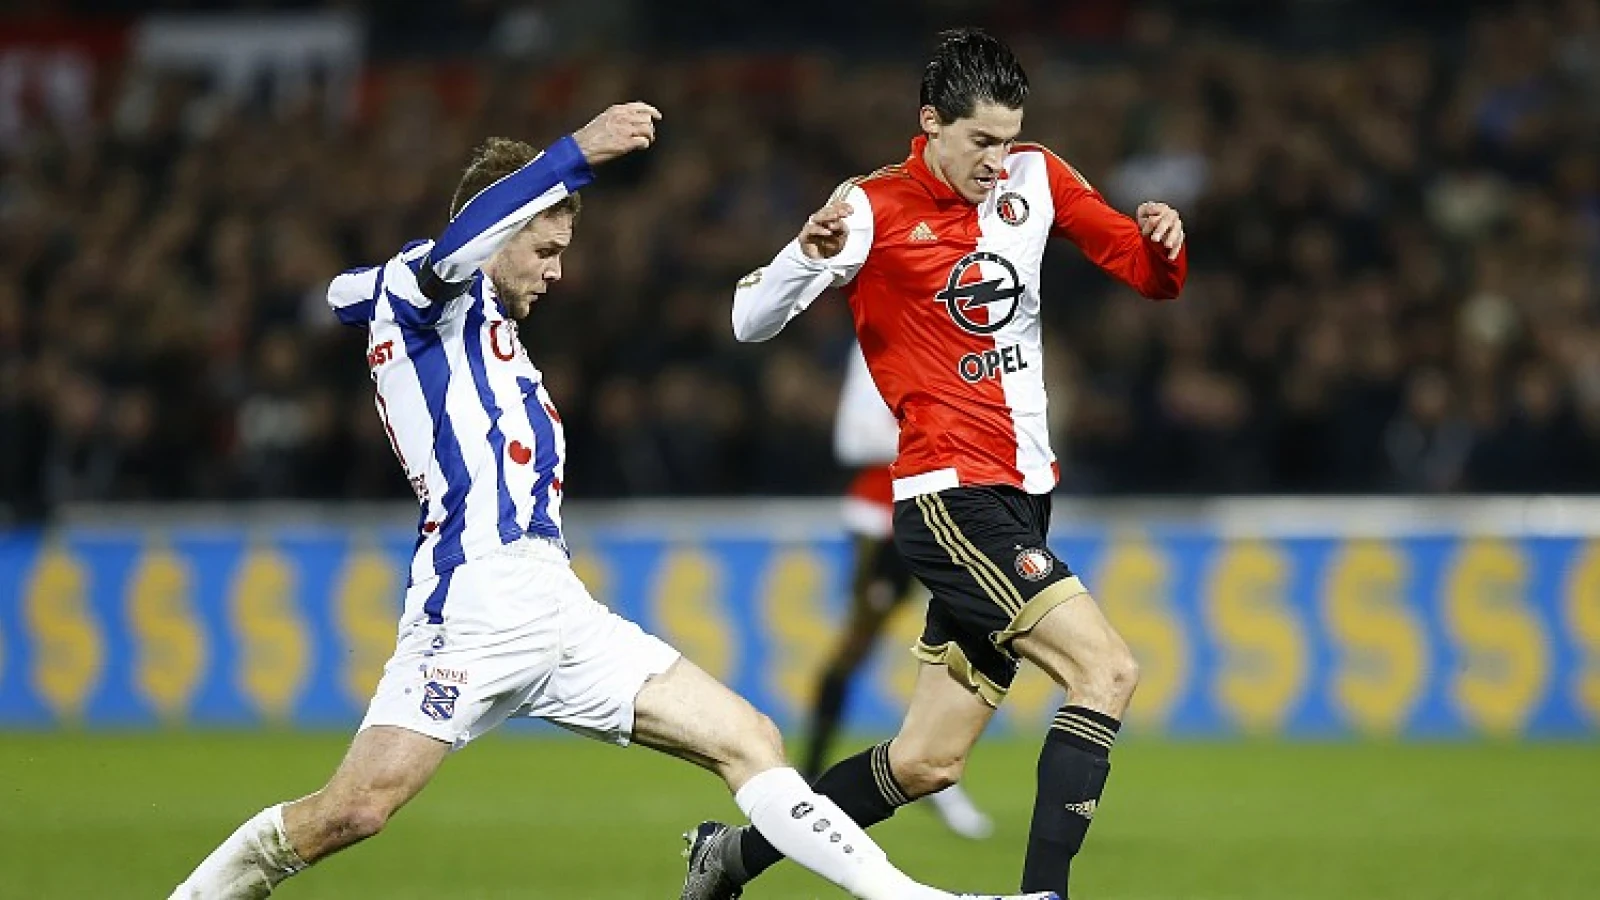 'Vejinovi? met dood bedreigd door Feyenoordsupporters'